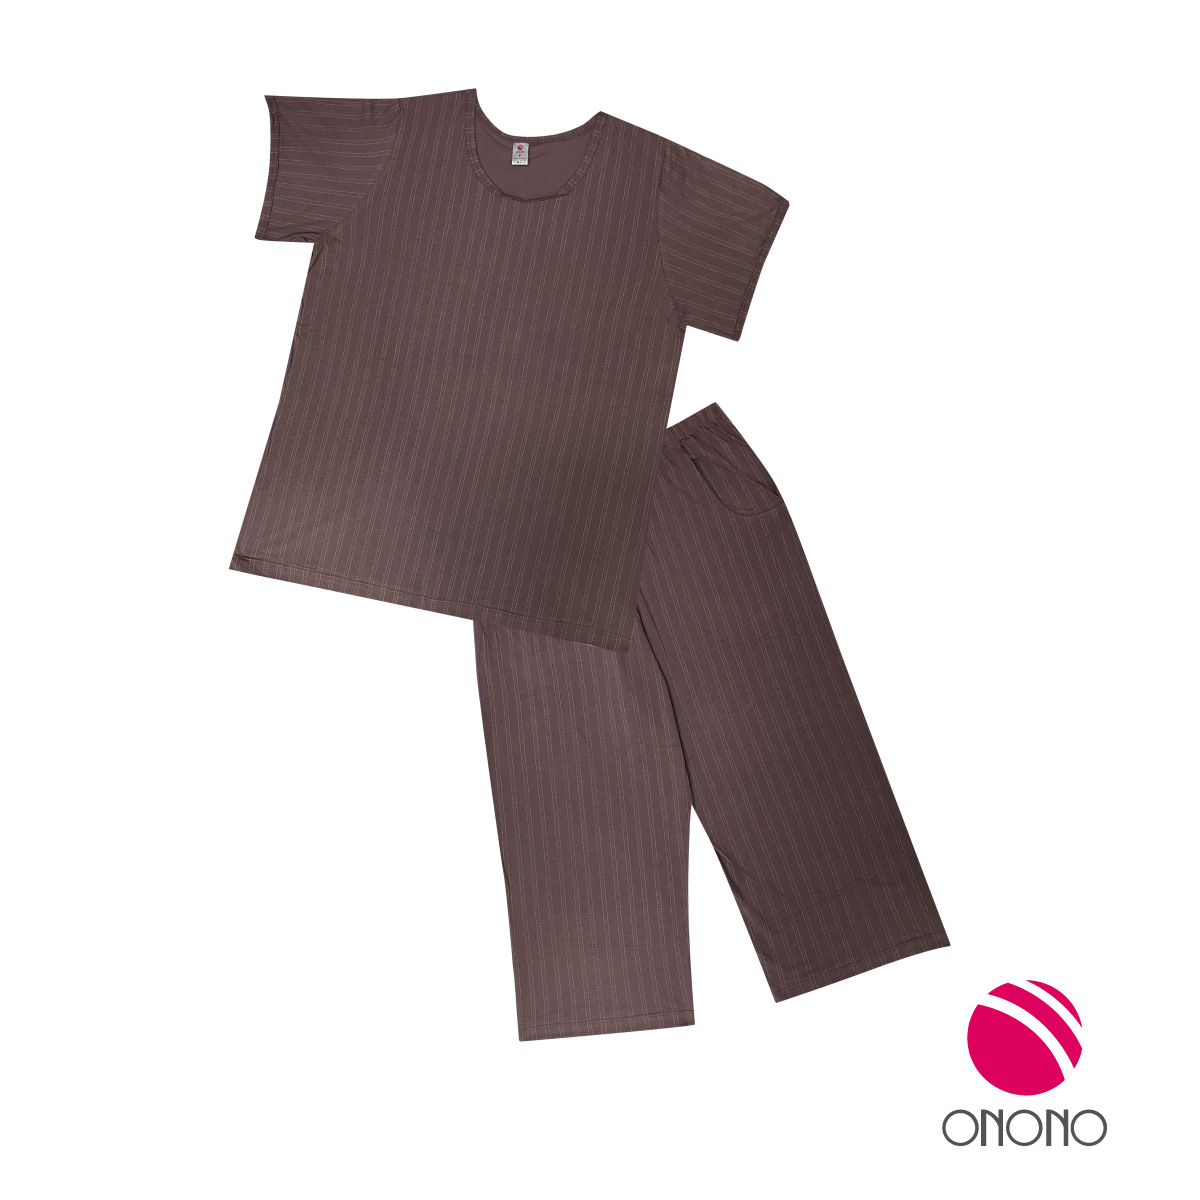 Onono ชุดนอน โอโนโน่ เสื้อแขนสั้น กางเกงขายาว รุ่น OC1207